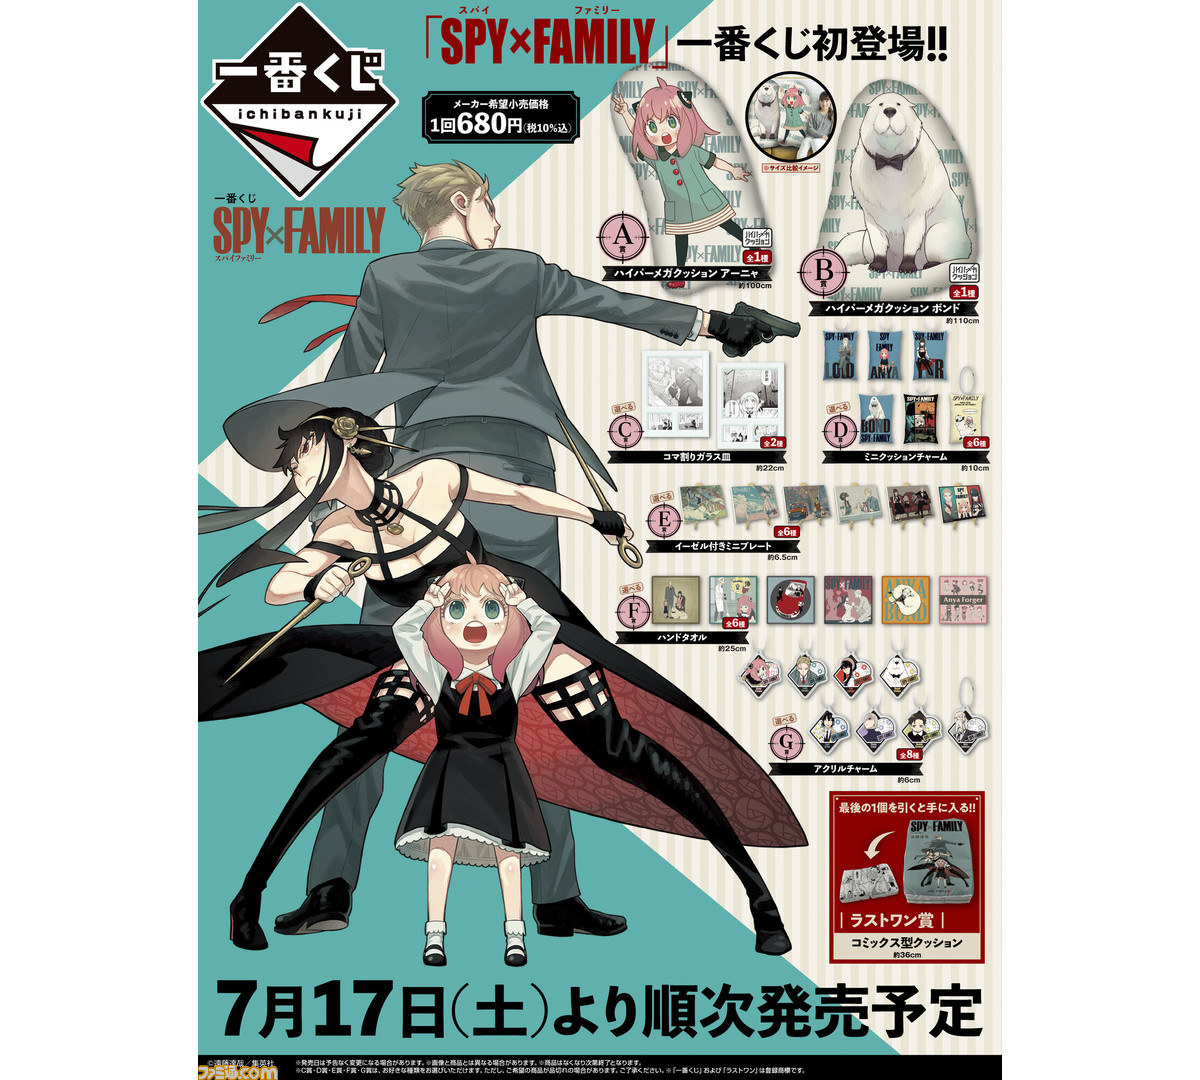 可愛い通販サイト 一番くじ SPY× スパイファミリー アーニャ ボンド クッション セミコンプ - rikyu-home.com